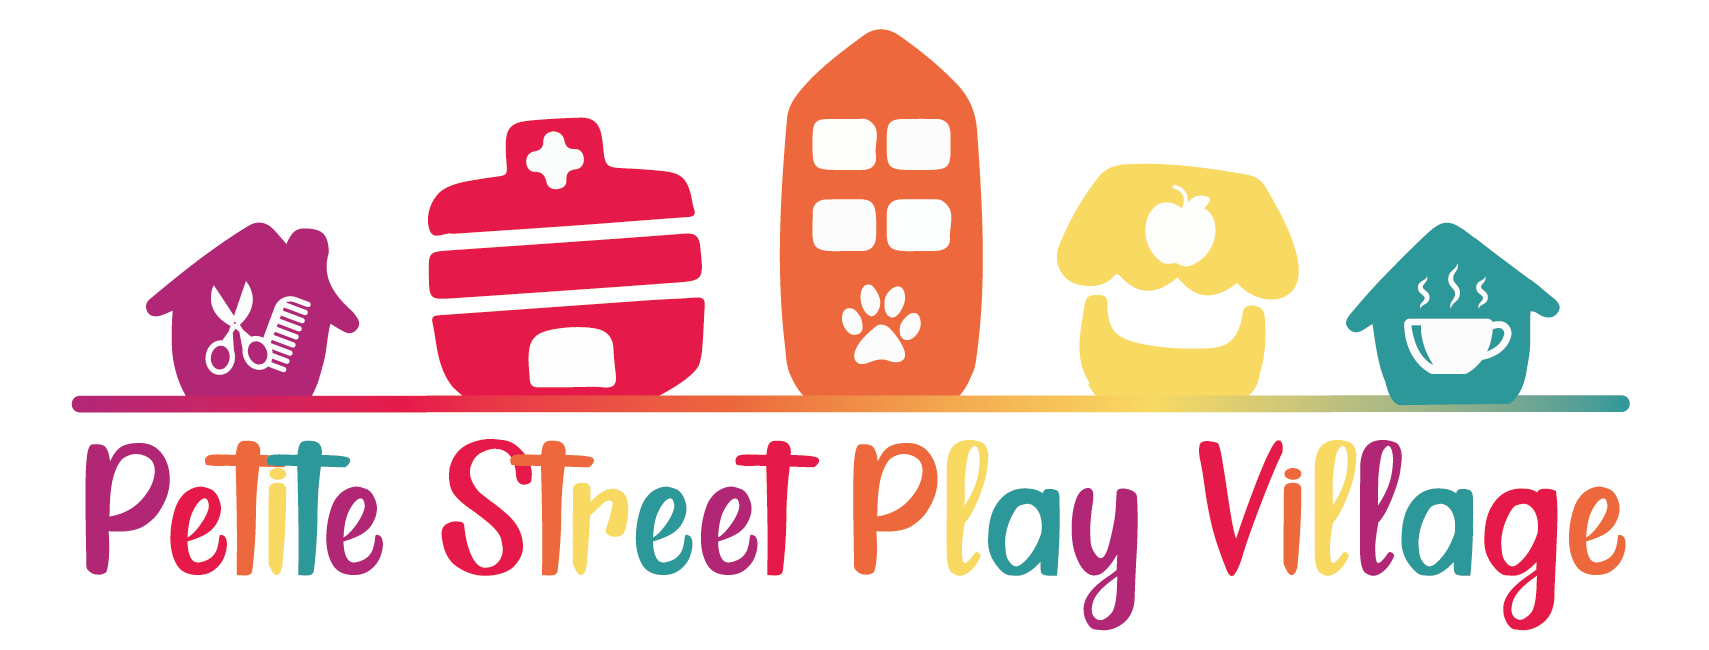 Petite Street Play Village's main image